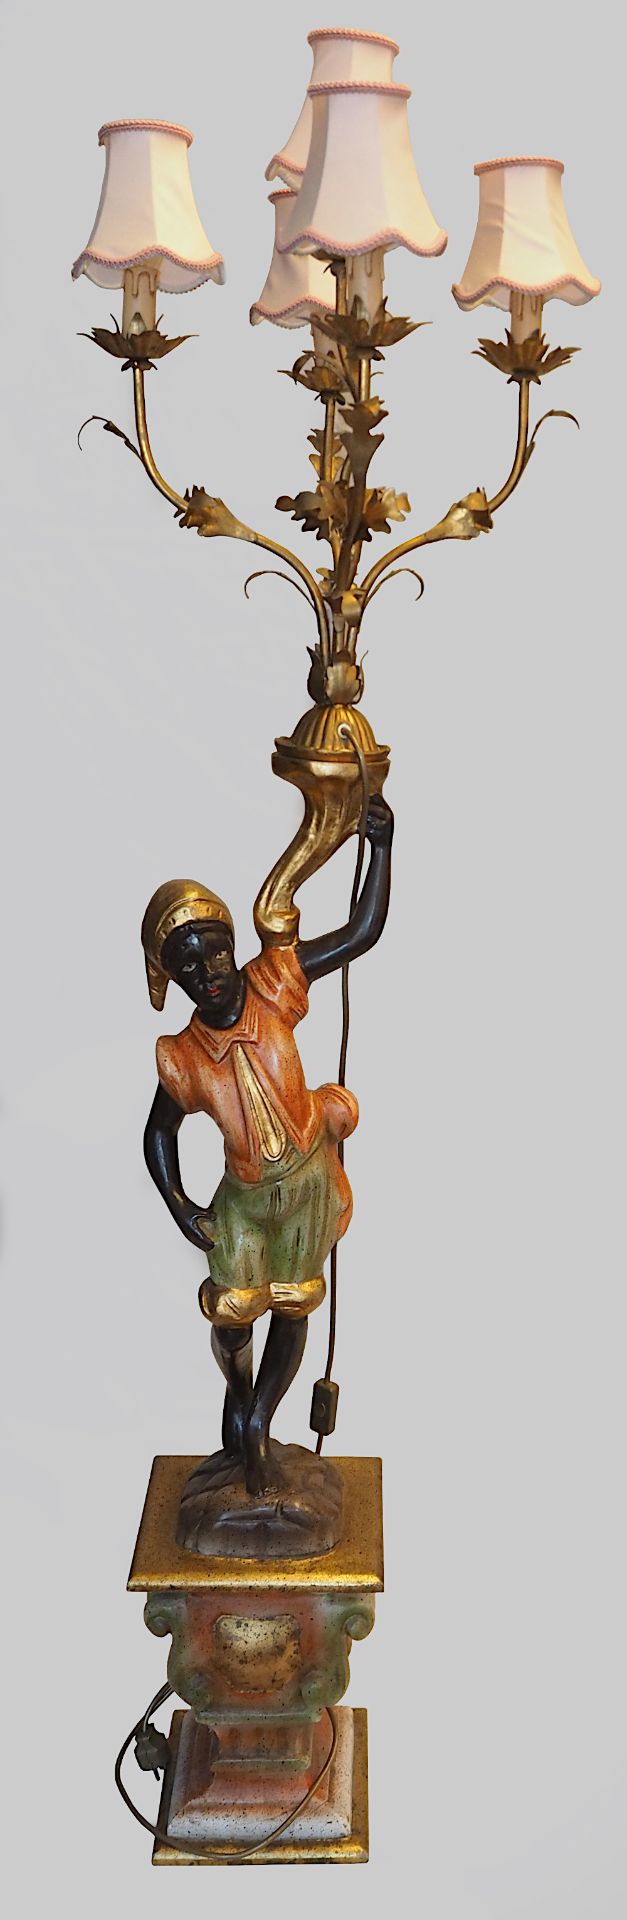 1 Stehlampe „Mohr mit phrygischer Mütze“ Holz farbig gefasst z.T. vergoldet, 20. Jh.